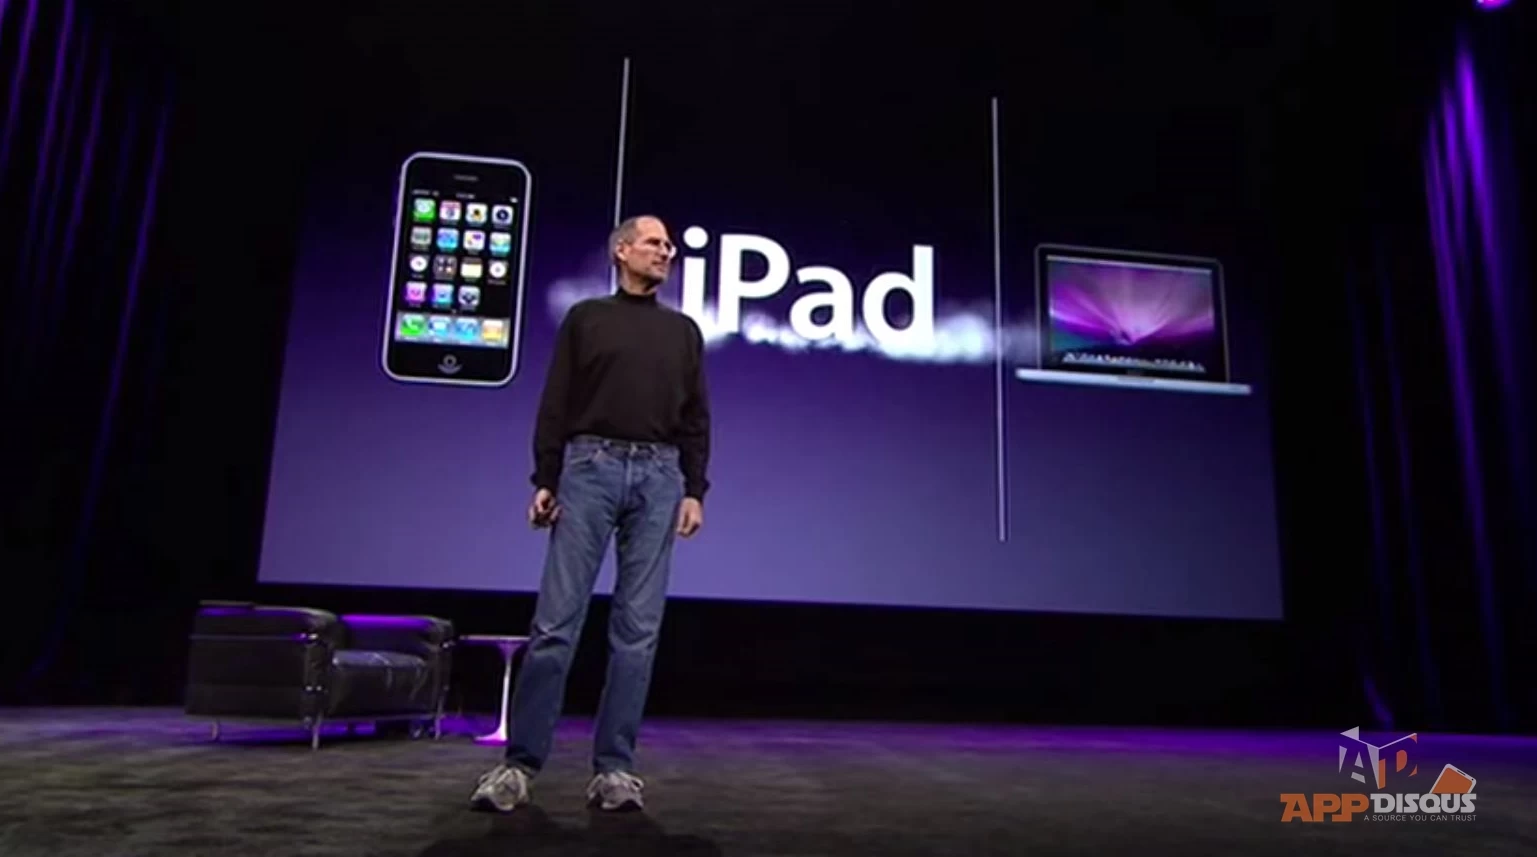 10947378 10204636124596630 7462459316999356524 o | IOS (iPhone/iPad) | คลิปวีดีโอ: การเปิดตัว iPad ครั้งแรก รำลึก Steve Jobs กับครบรอบ 5 ปี ของ iPad